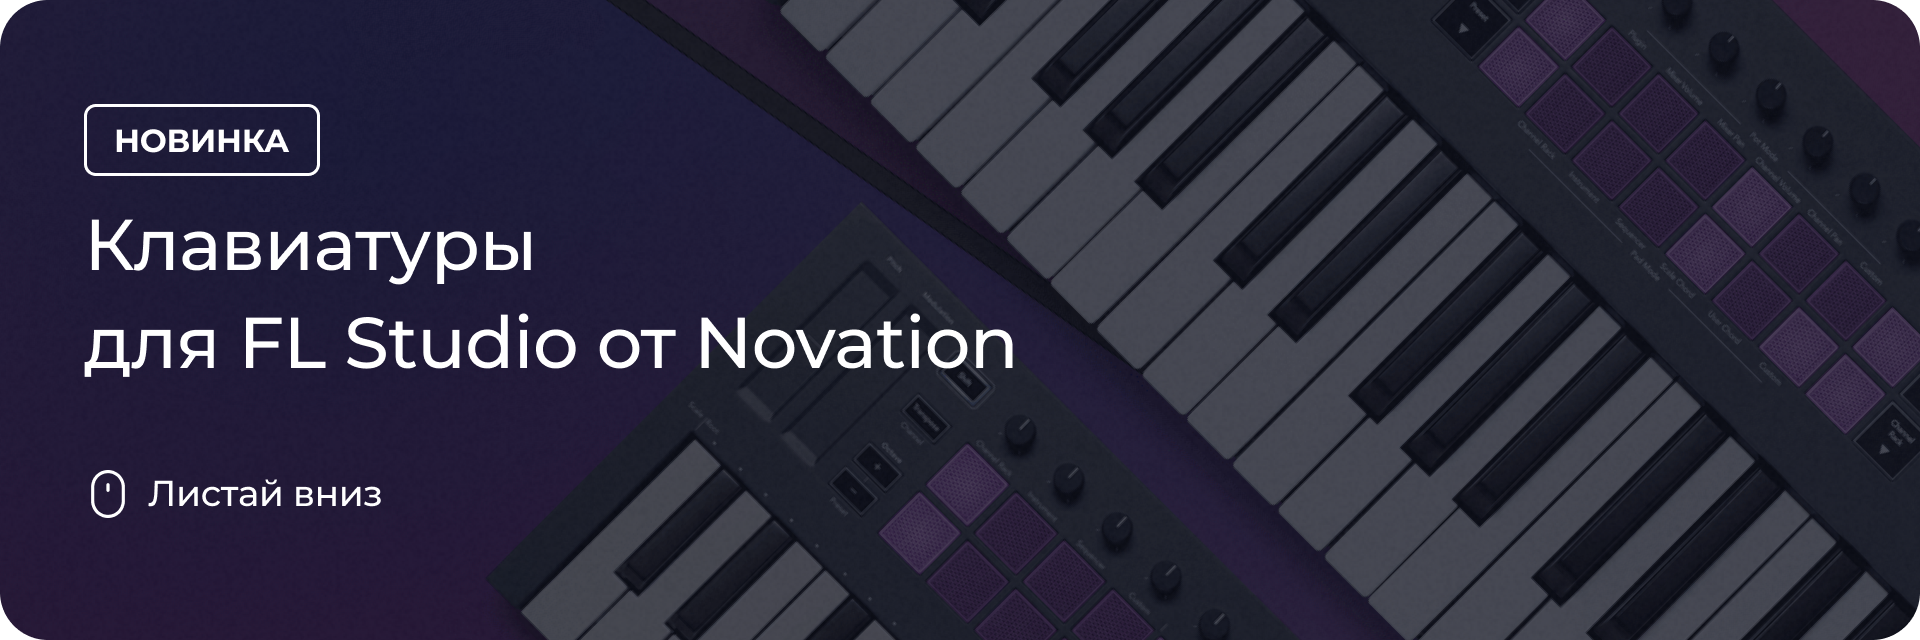 Клавиатуры для FL Studio от Novation